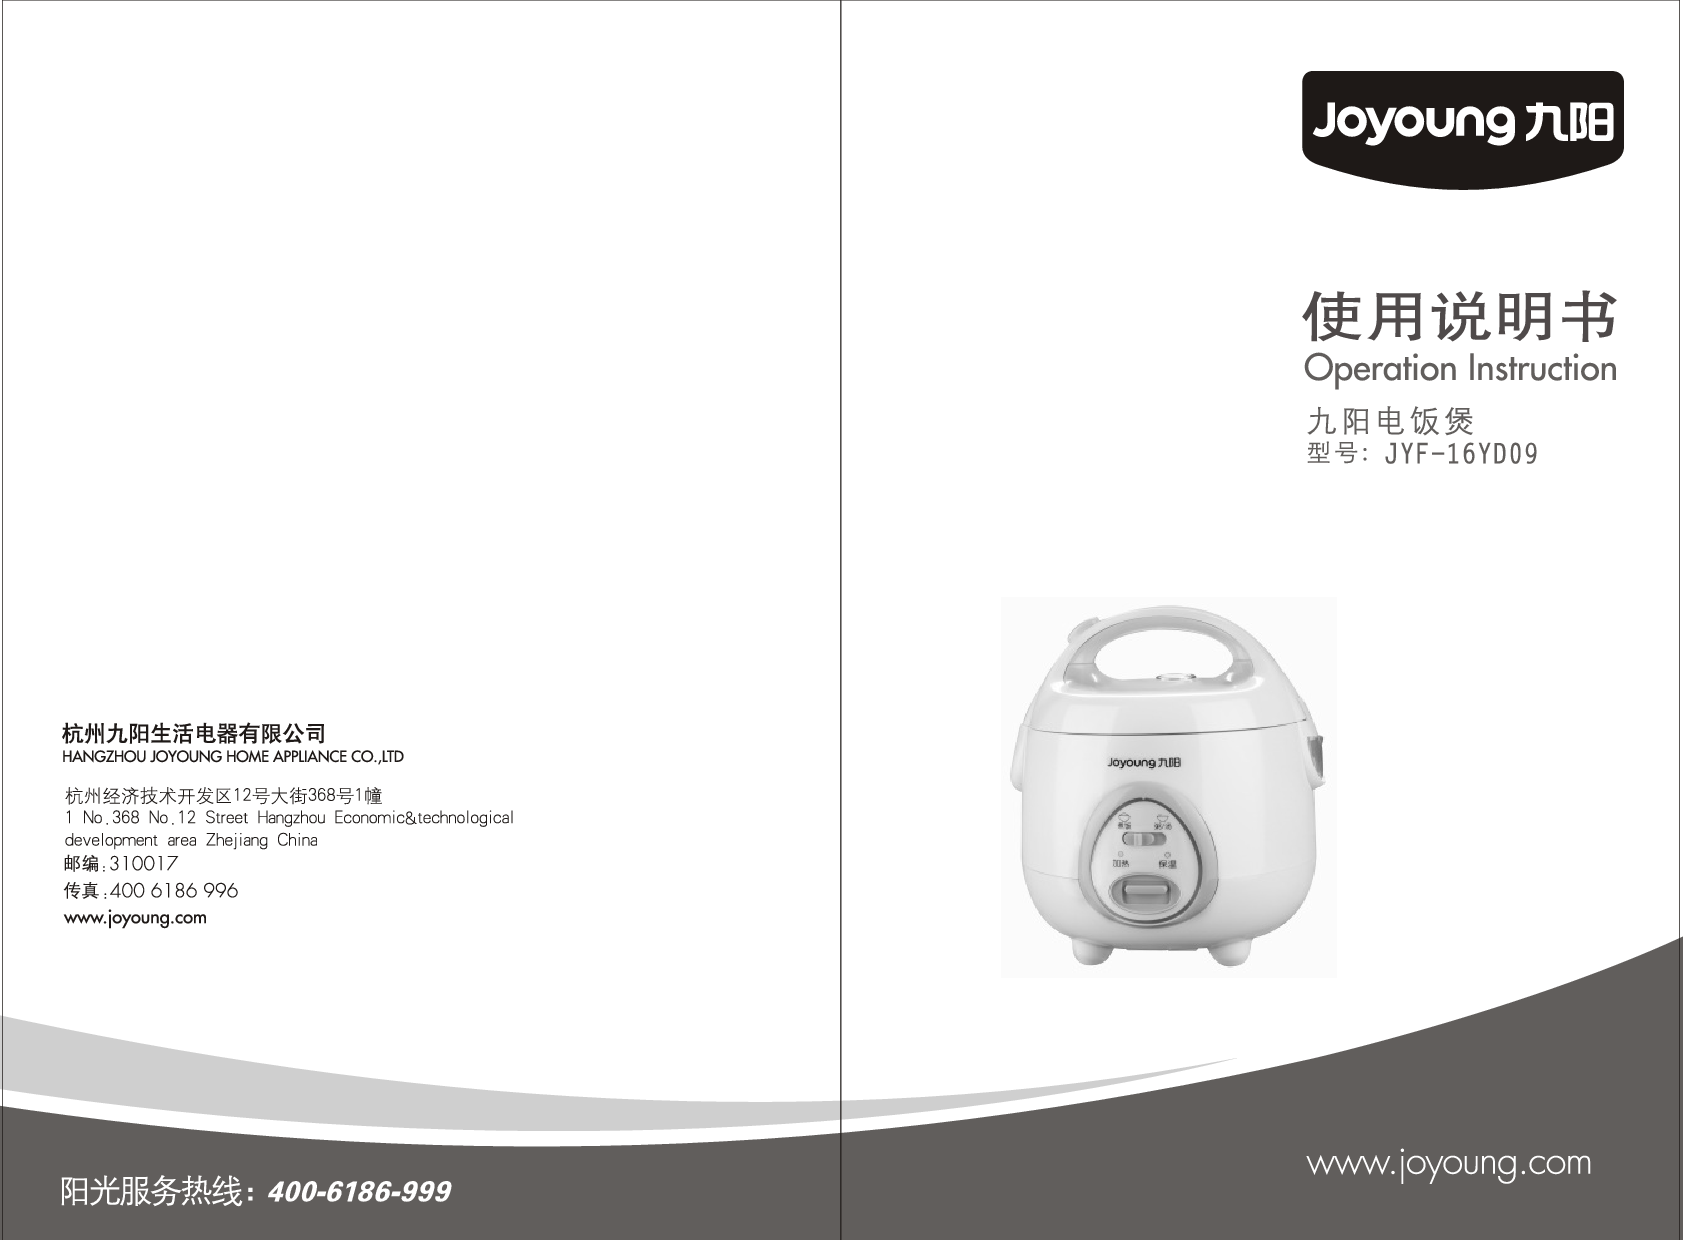 九阳 Joyyoung JYF-16YD09 使用说明书 封面